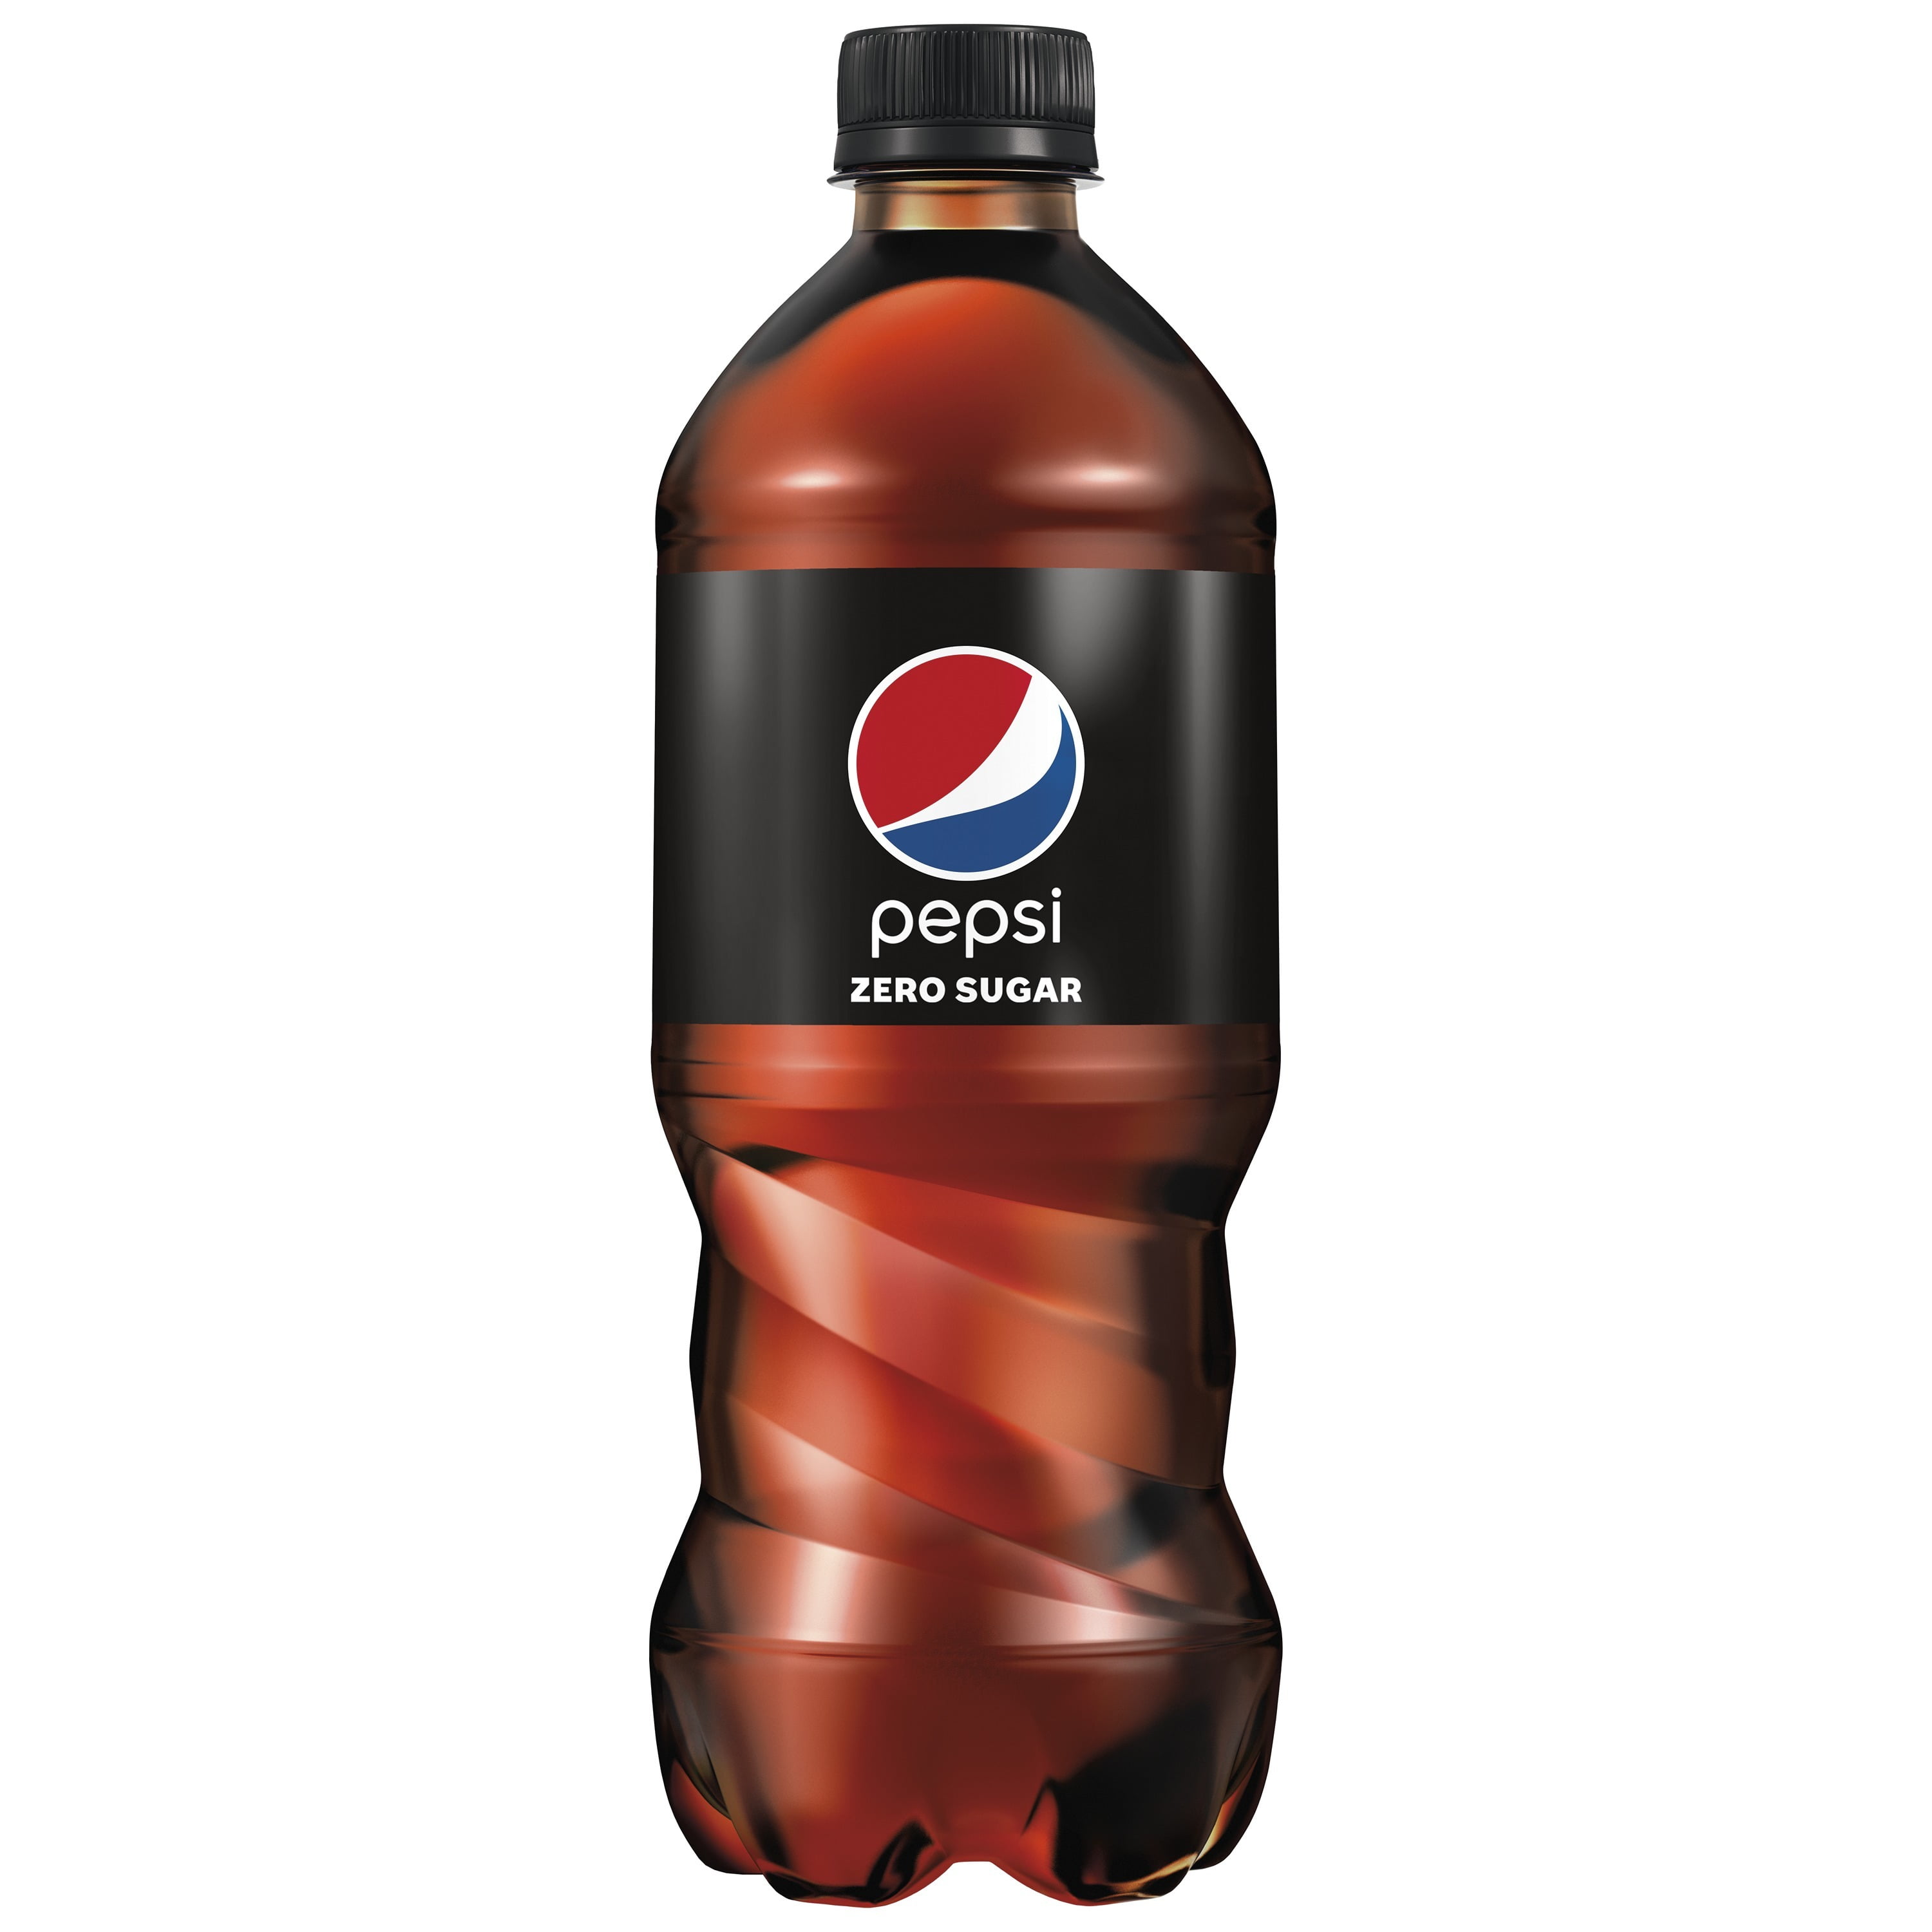 Пепси зеро. Пепси Зеро 0. Бутылка пепси. Pepsi Zero Sugar.